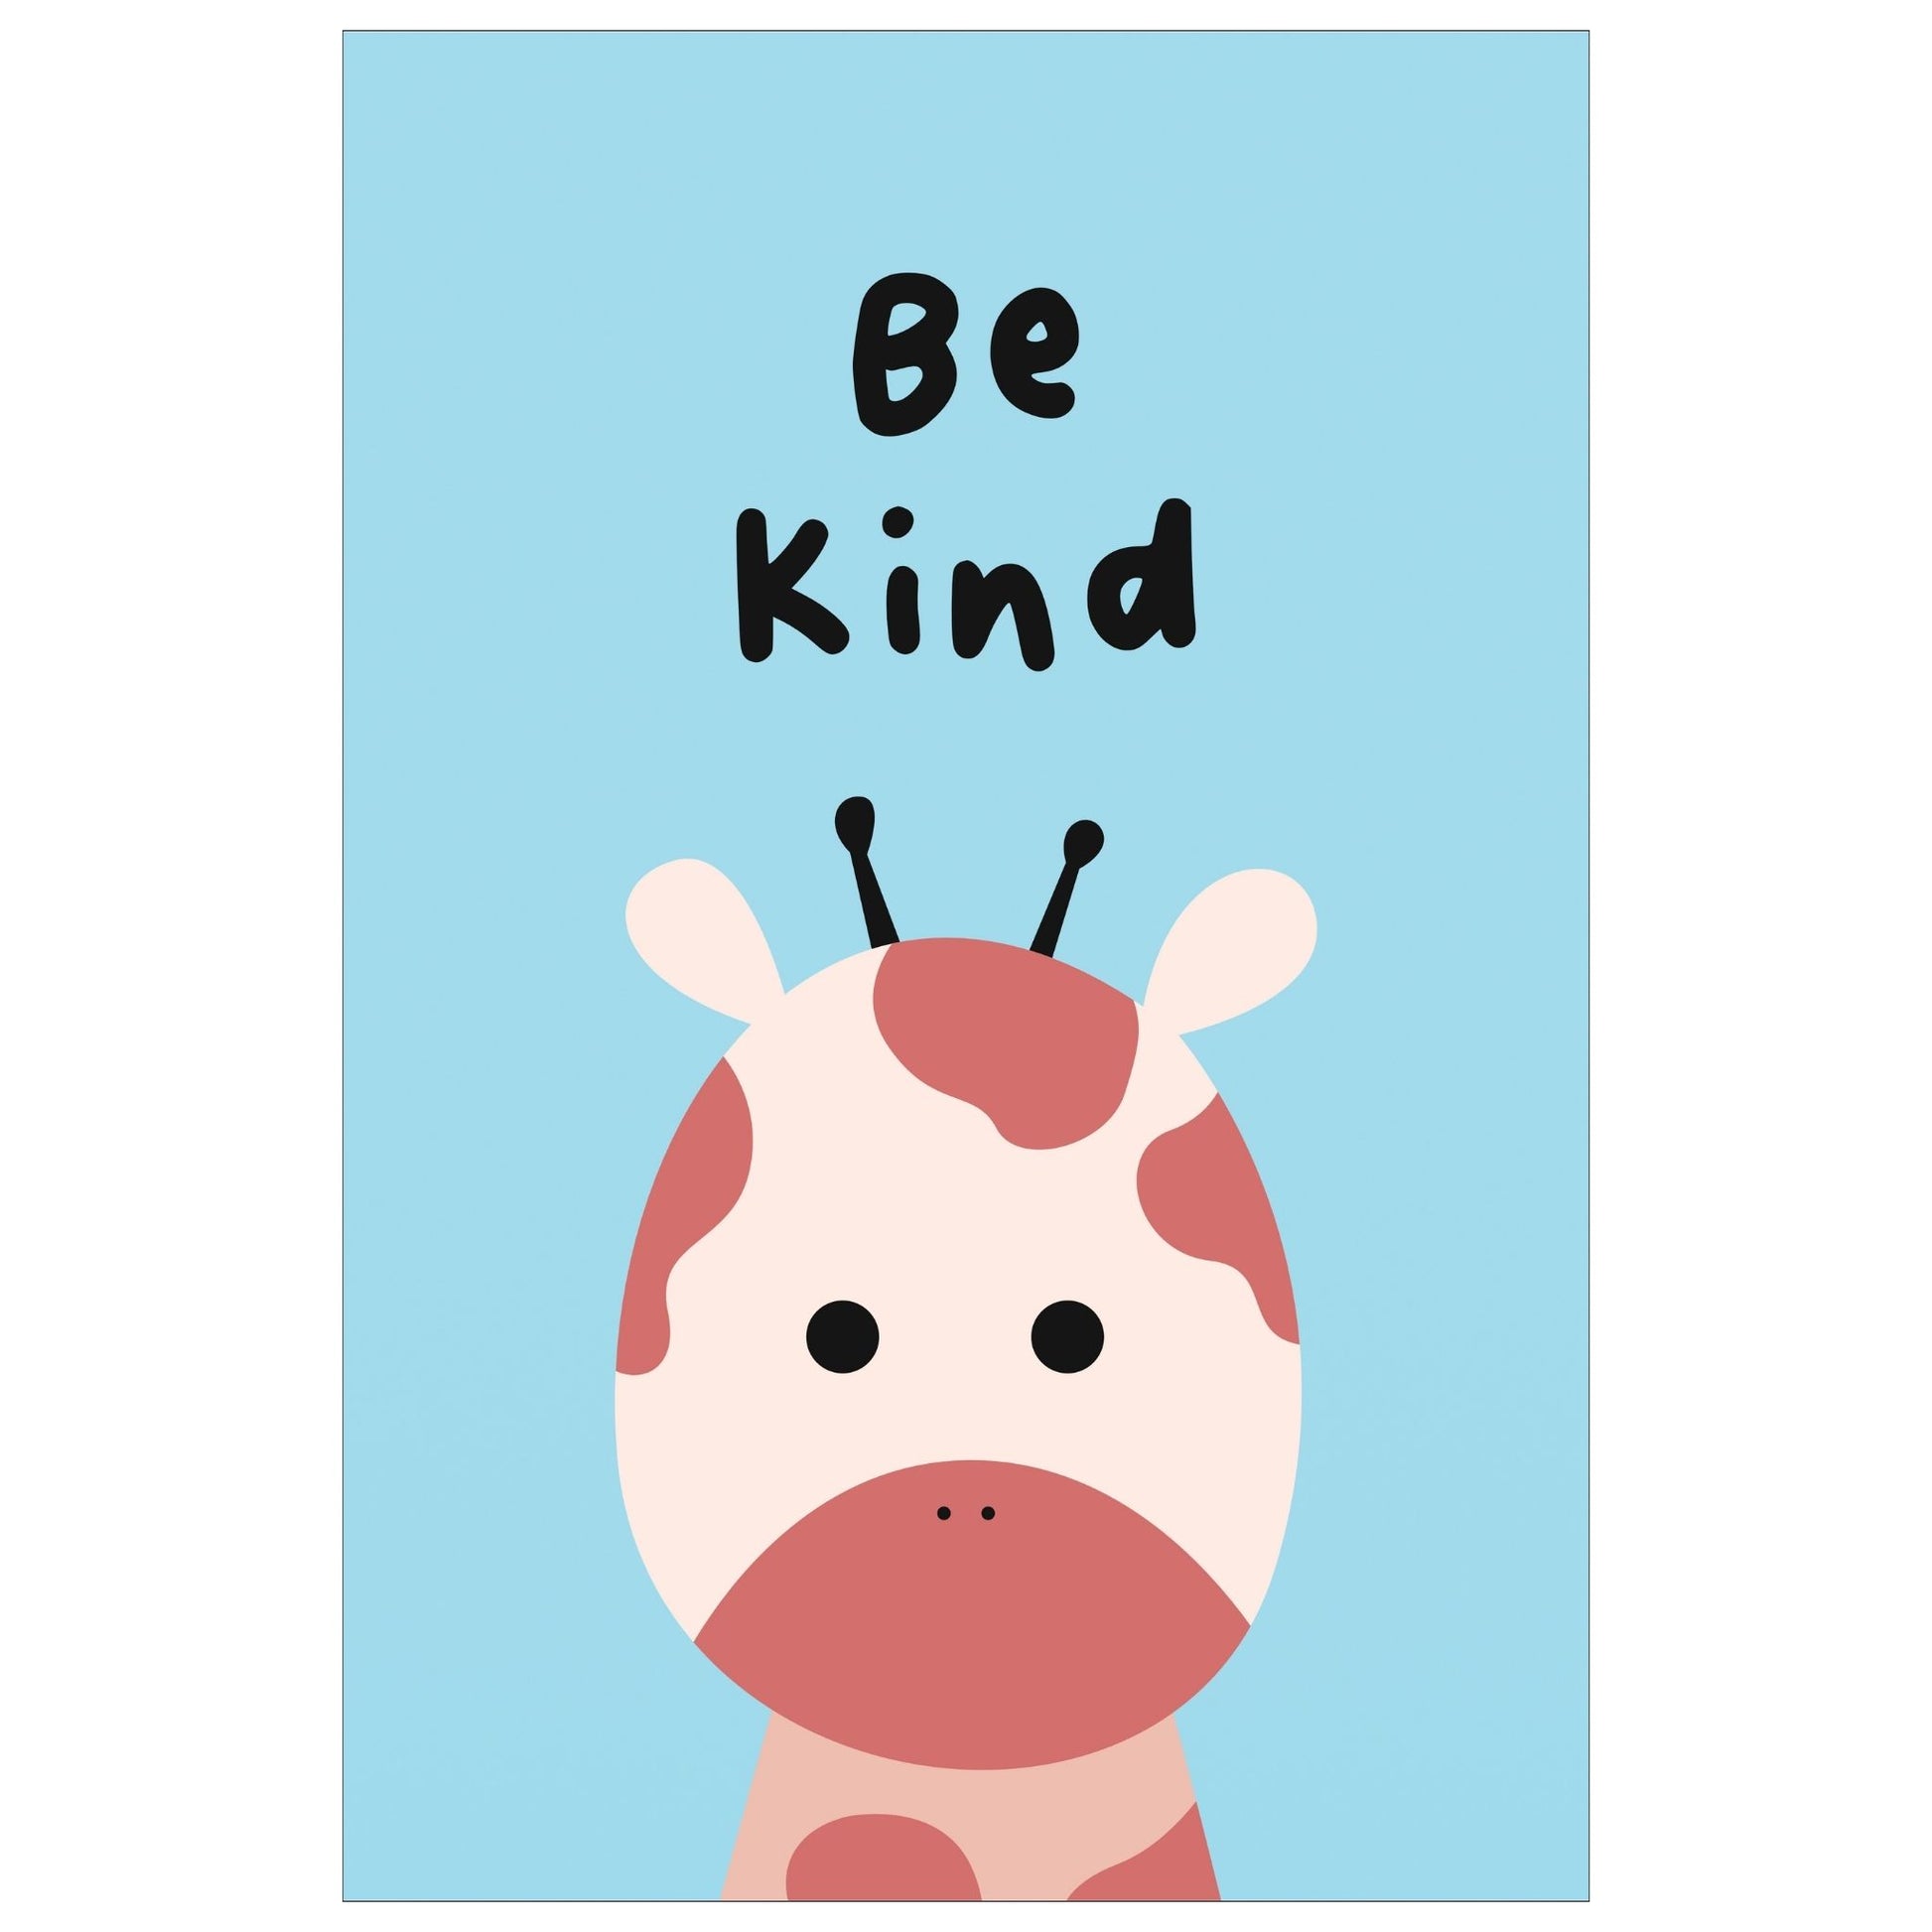 Cartoon Animal. Grafisk plakat for barnerommet. Beige sjiraff på lys blå bakgrunn. Tekst "Be kind".